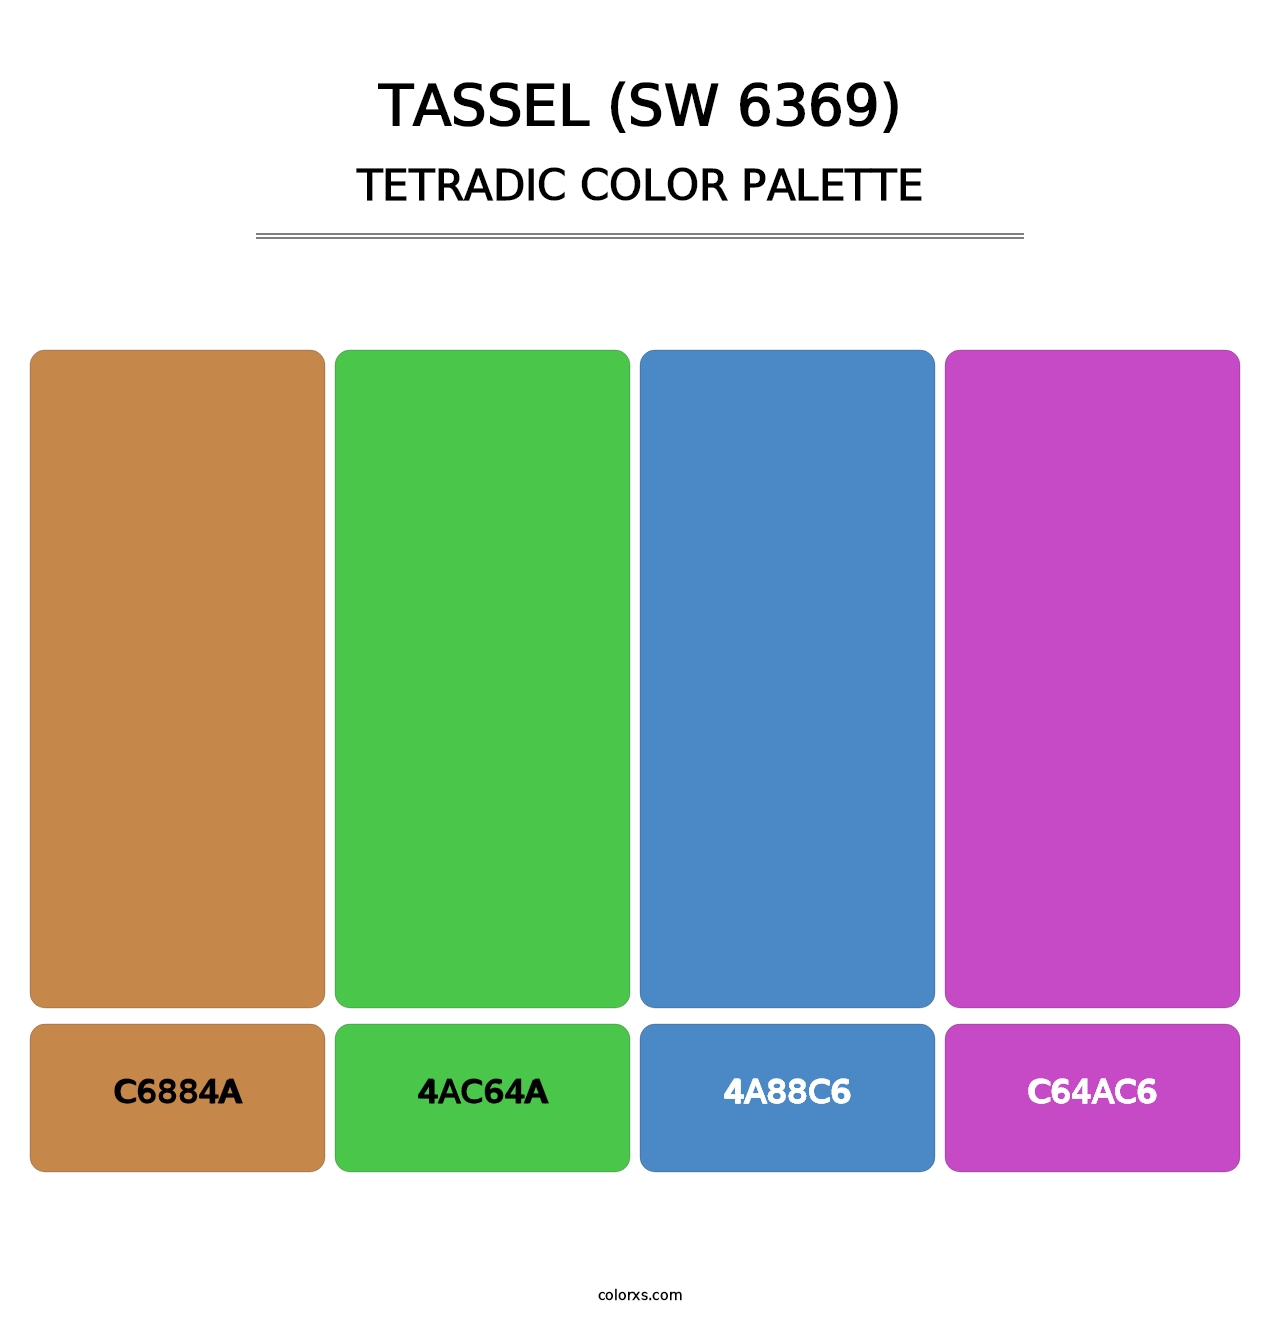 Tassel (SW 6369) - Tetradic Color Palette